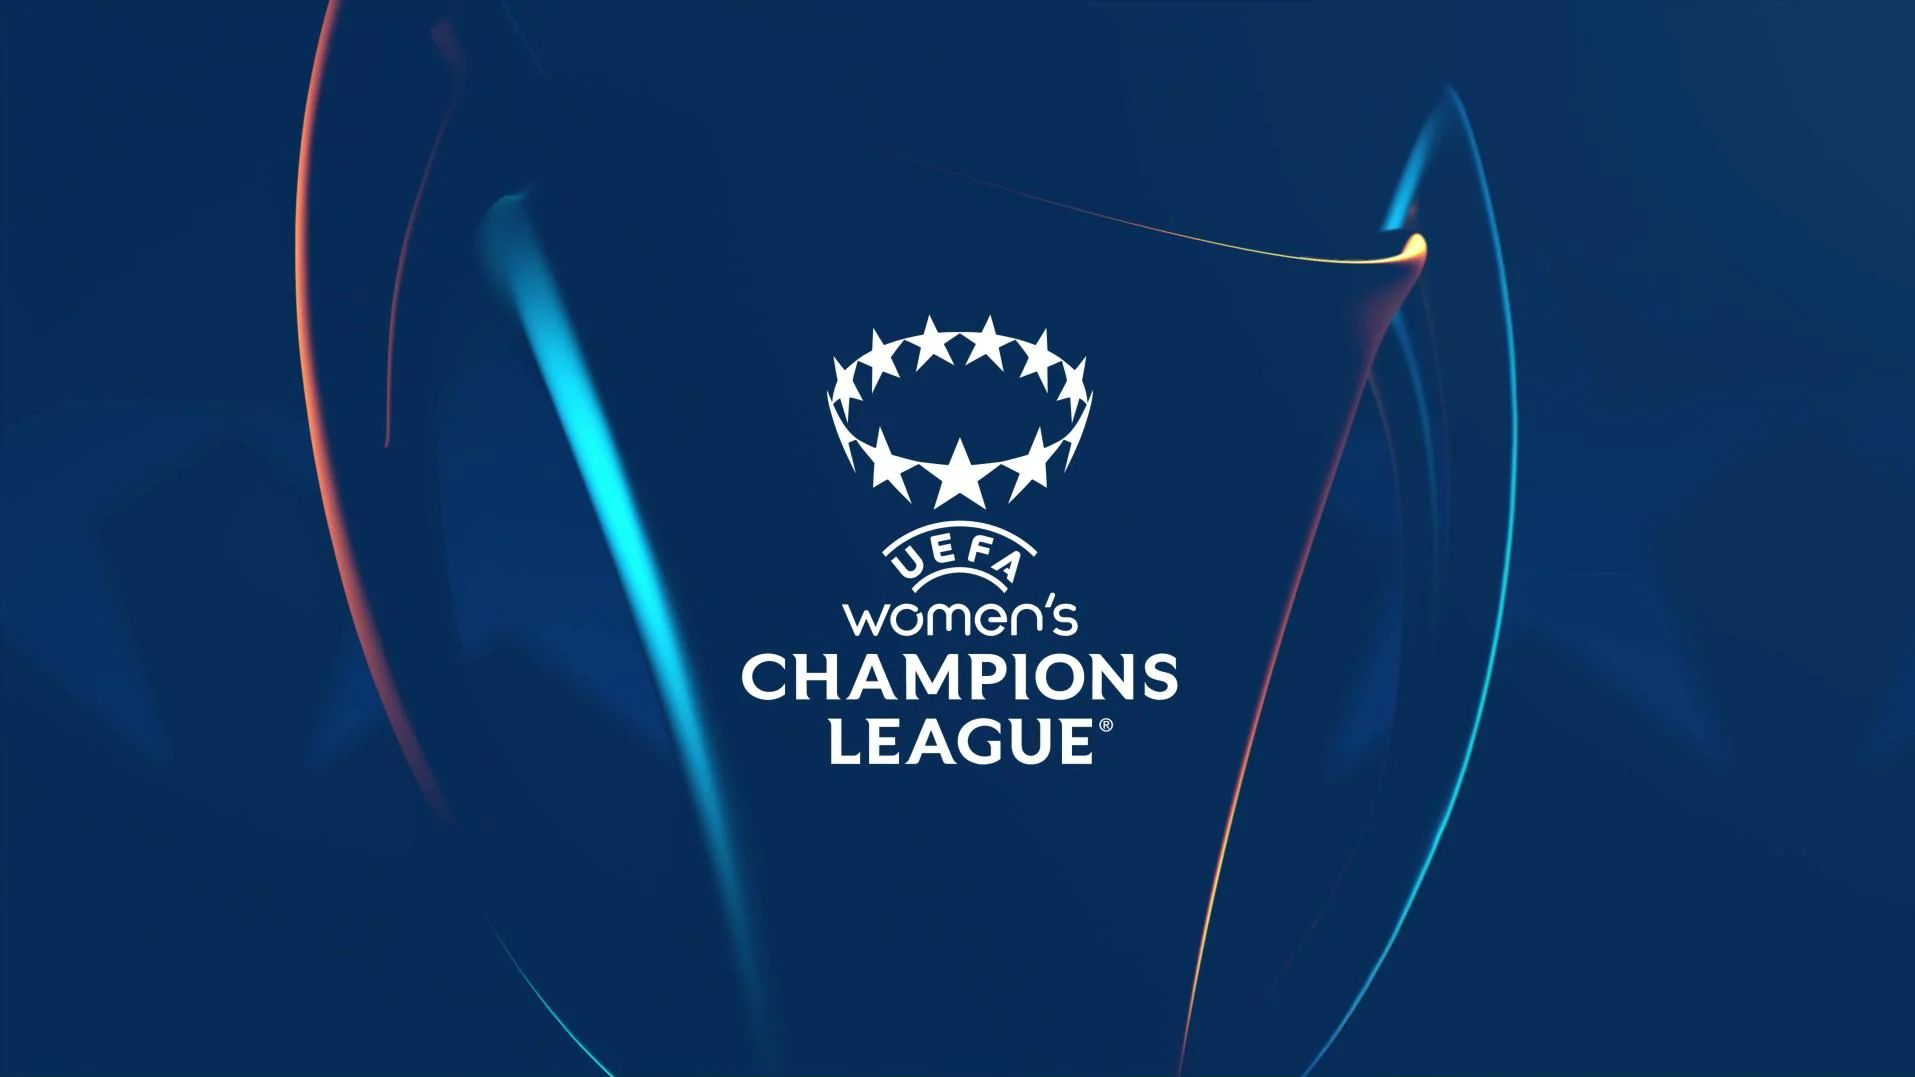 adidas UEFA Women's Champions League 2023 Eindhoven League Soccer